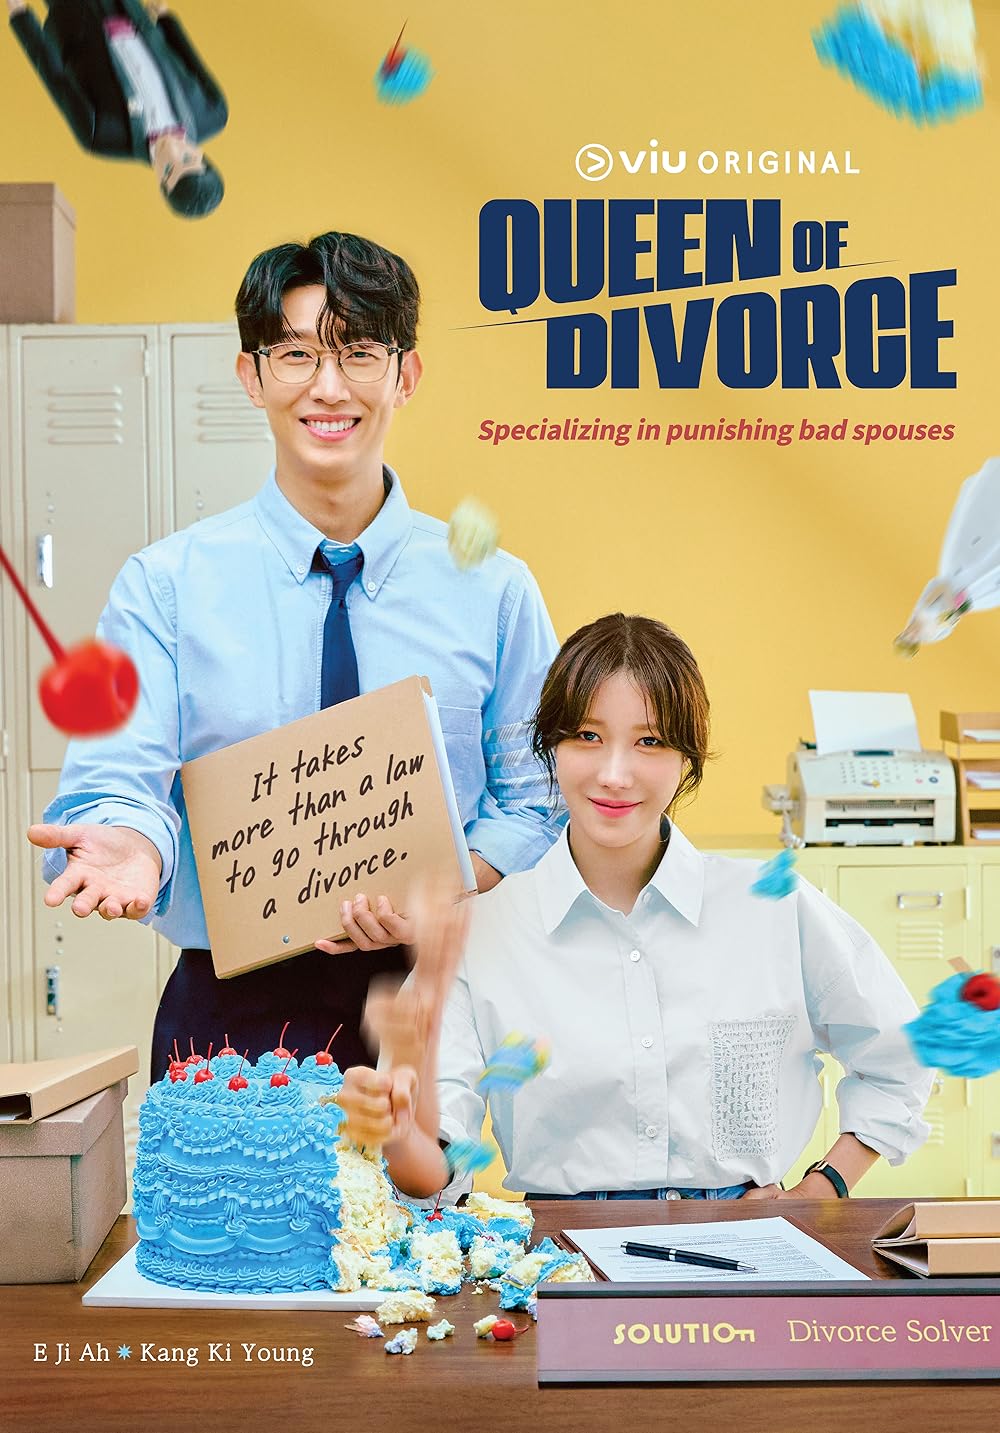 ดูหนังออนไลน์ฟรี Queen of Divorce ราชินีหย่าร้าง ซับไทย